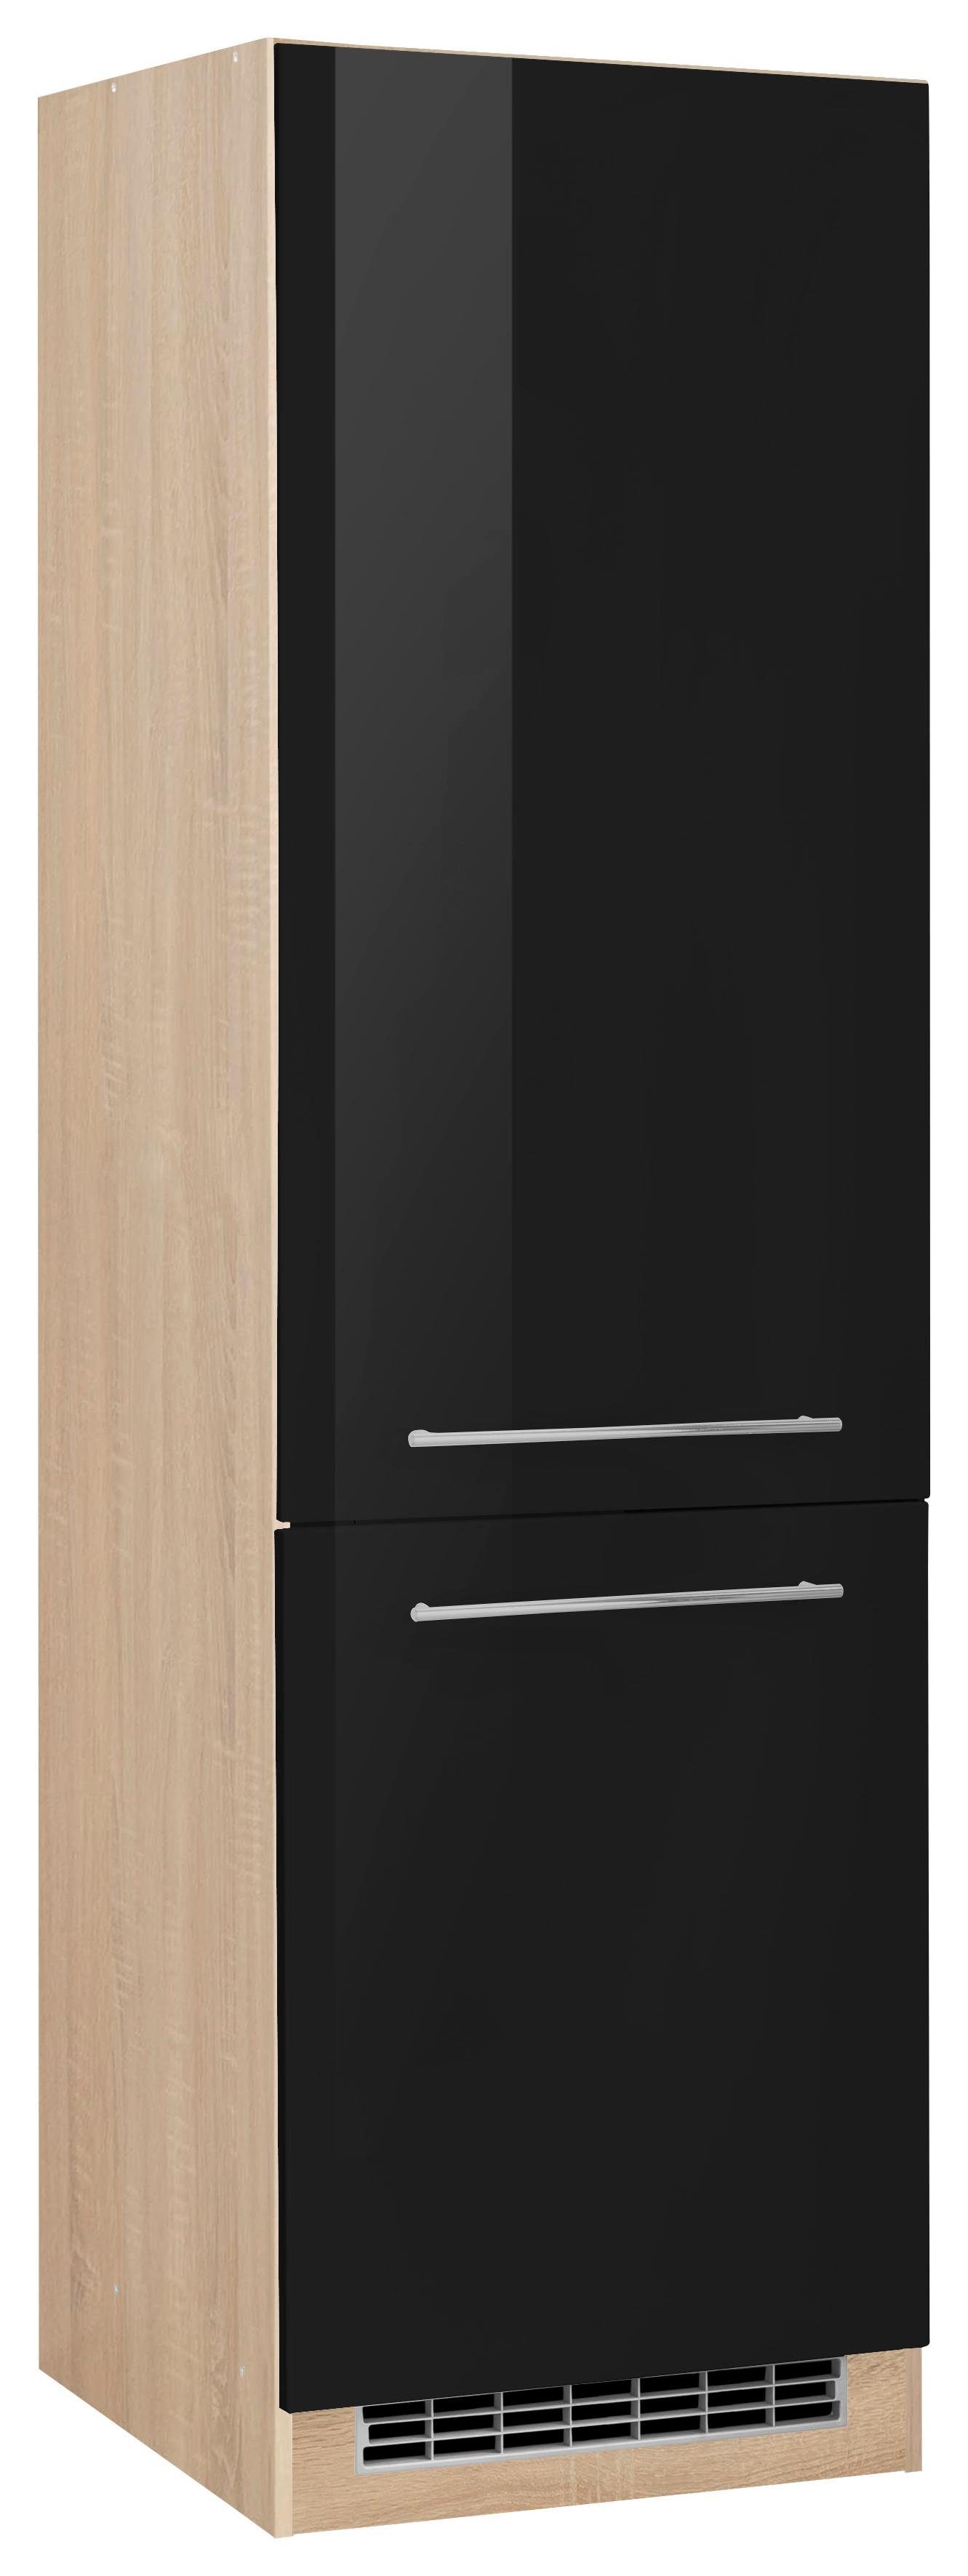 Geräteschrank für Kühlschrank FAVORIT Hochschrank BxHxT 60/200 cm Küche 